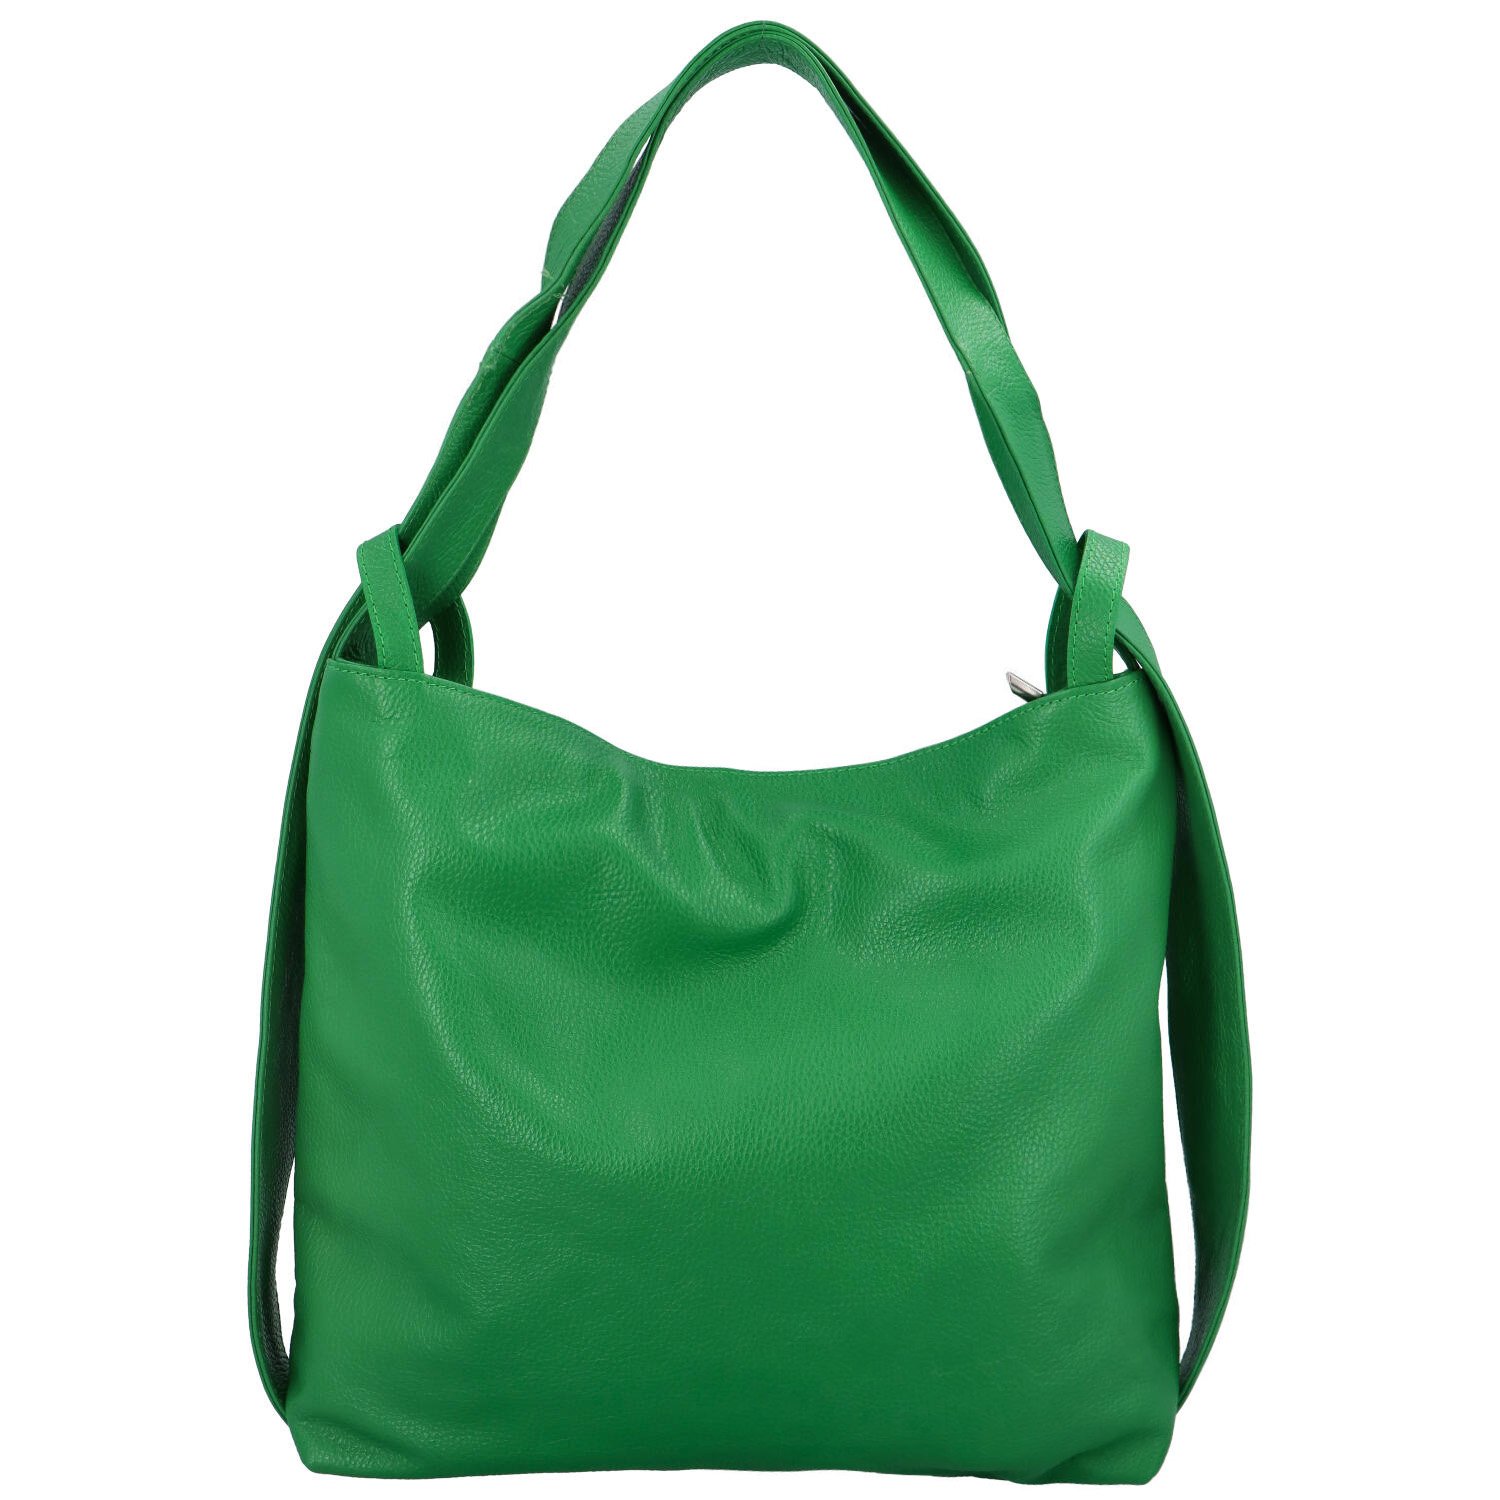 Dámská kožená kabelka přes rameno zelená - ItalY Armáni Medium